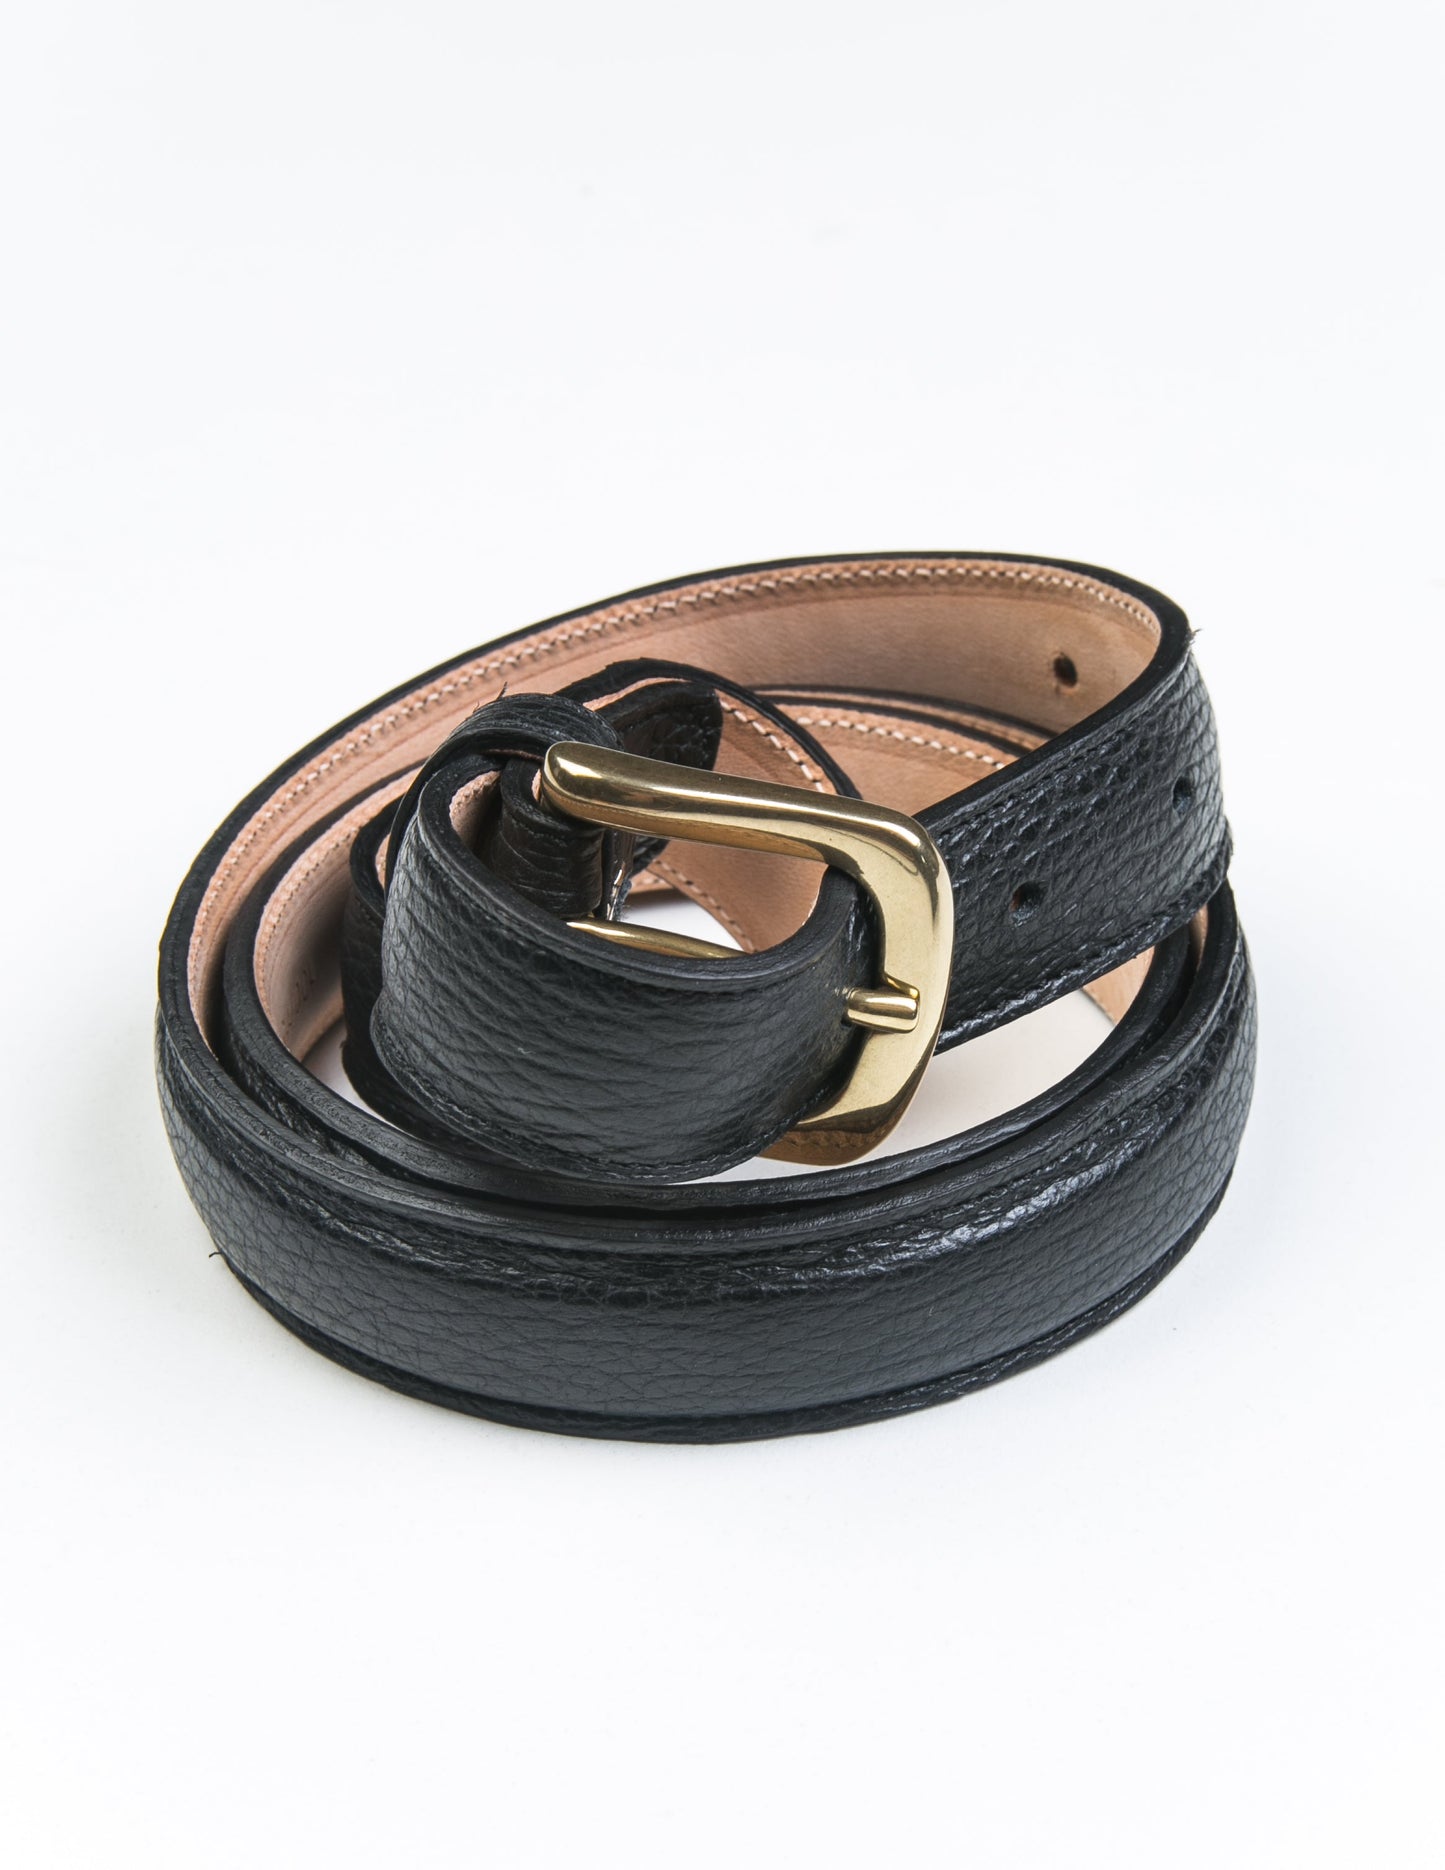 Semi-Dress Belt in Black Grain Leather